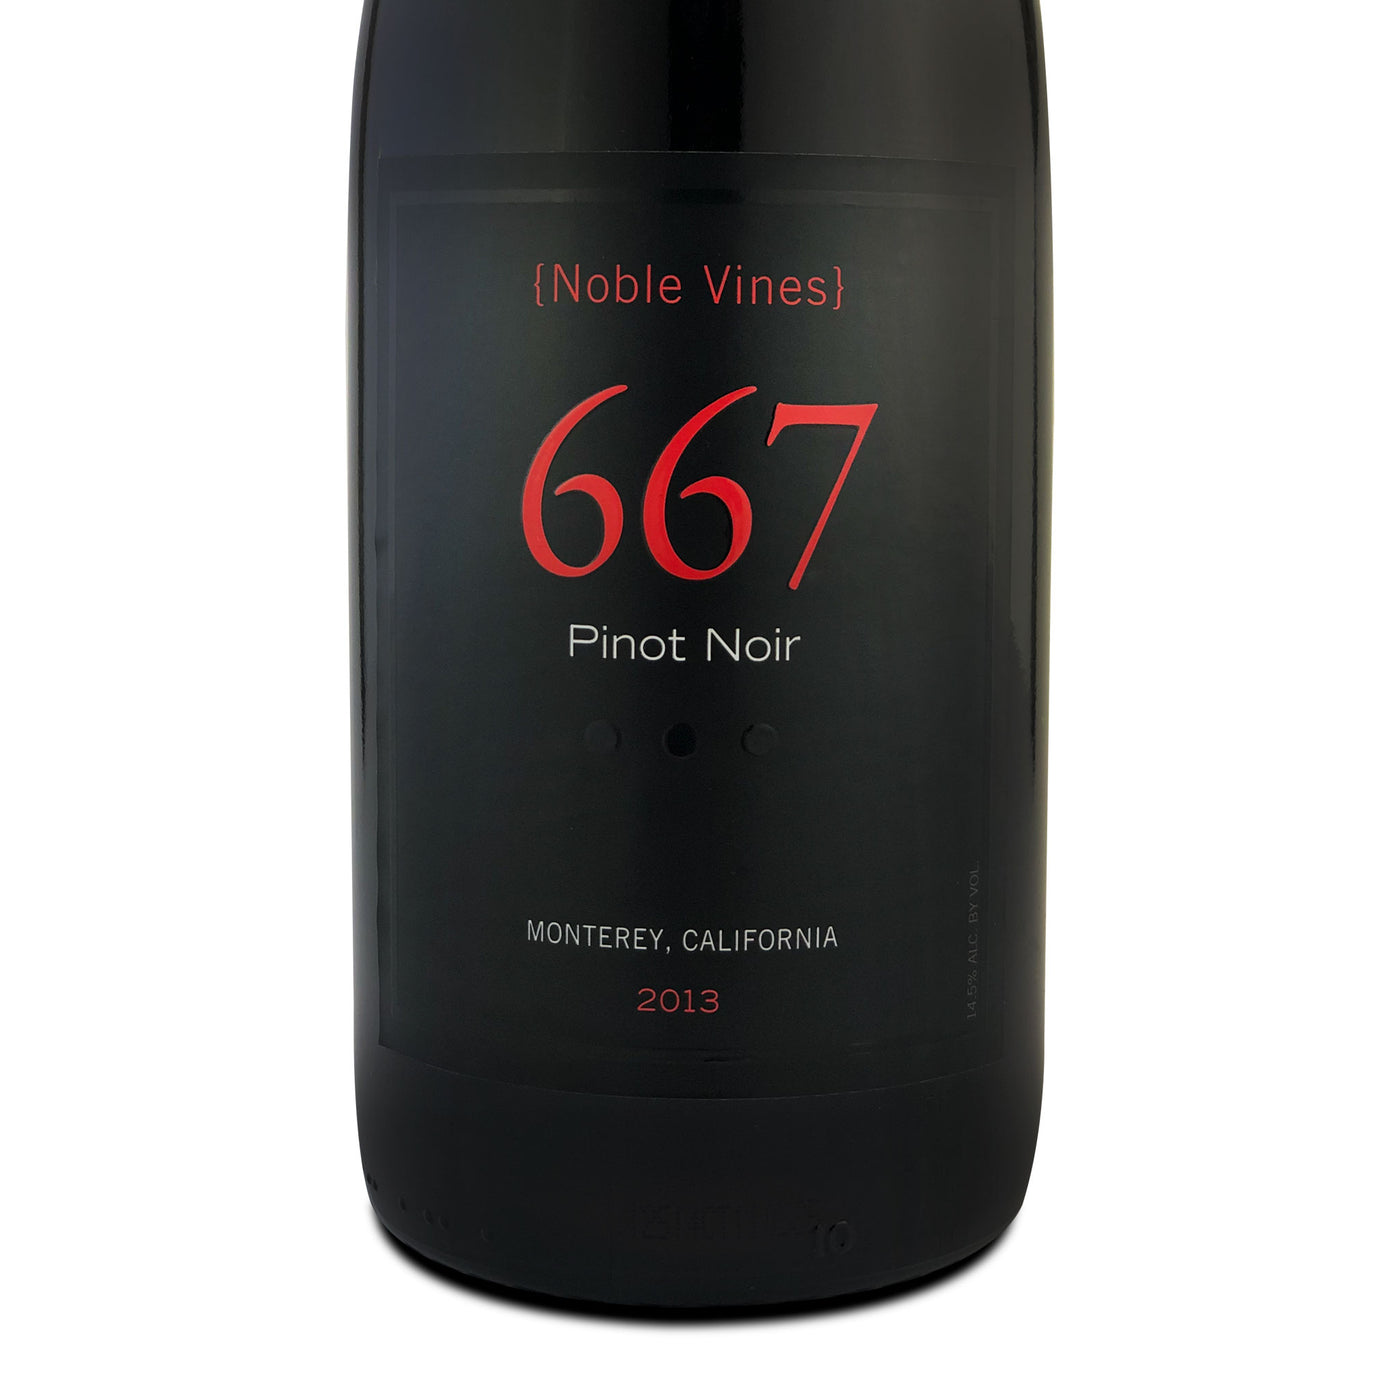 Noble Vines 667 Pinot Noir 2013